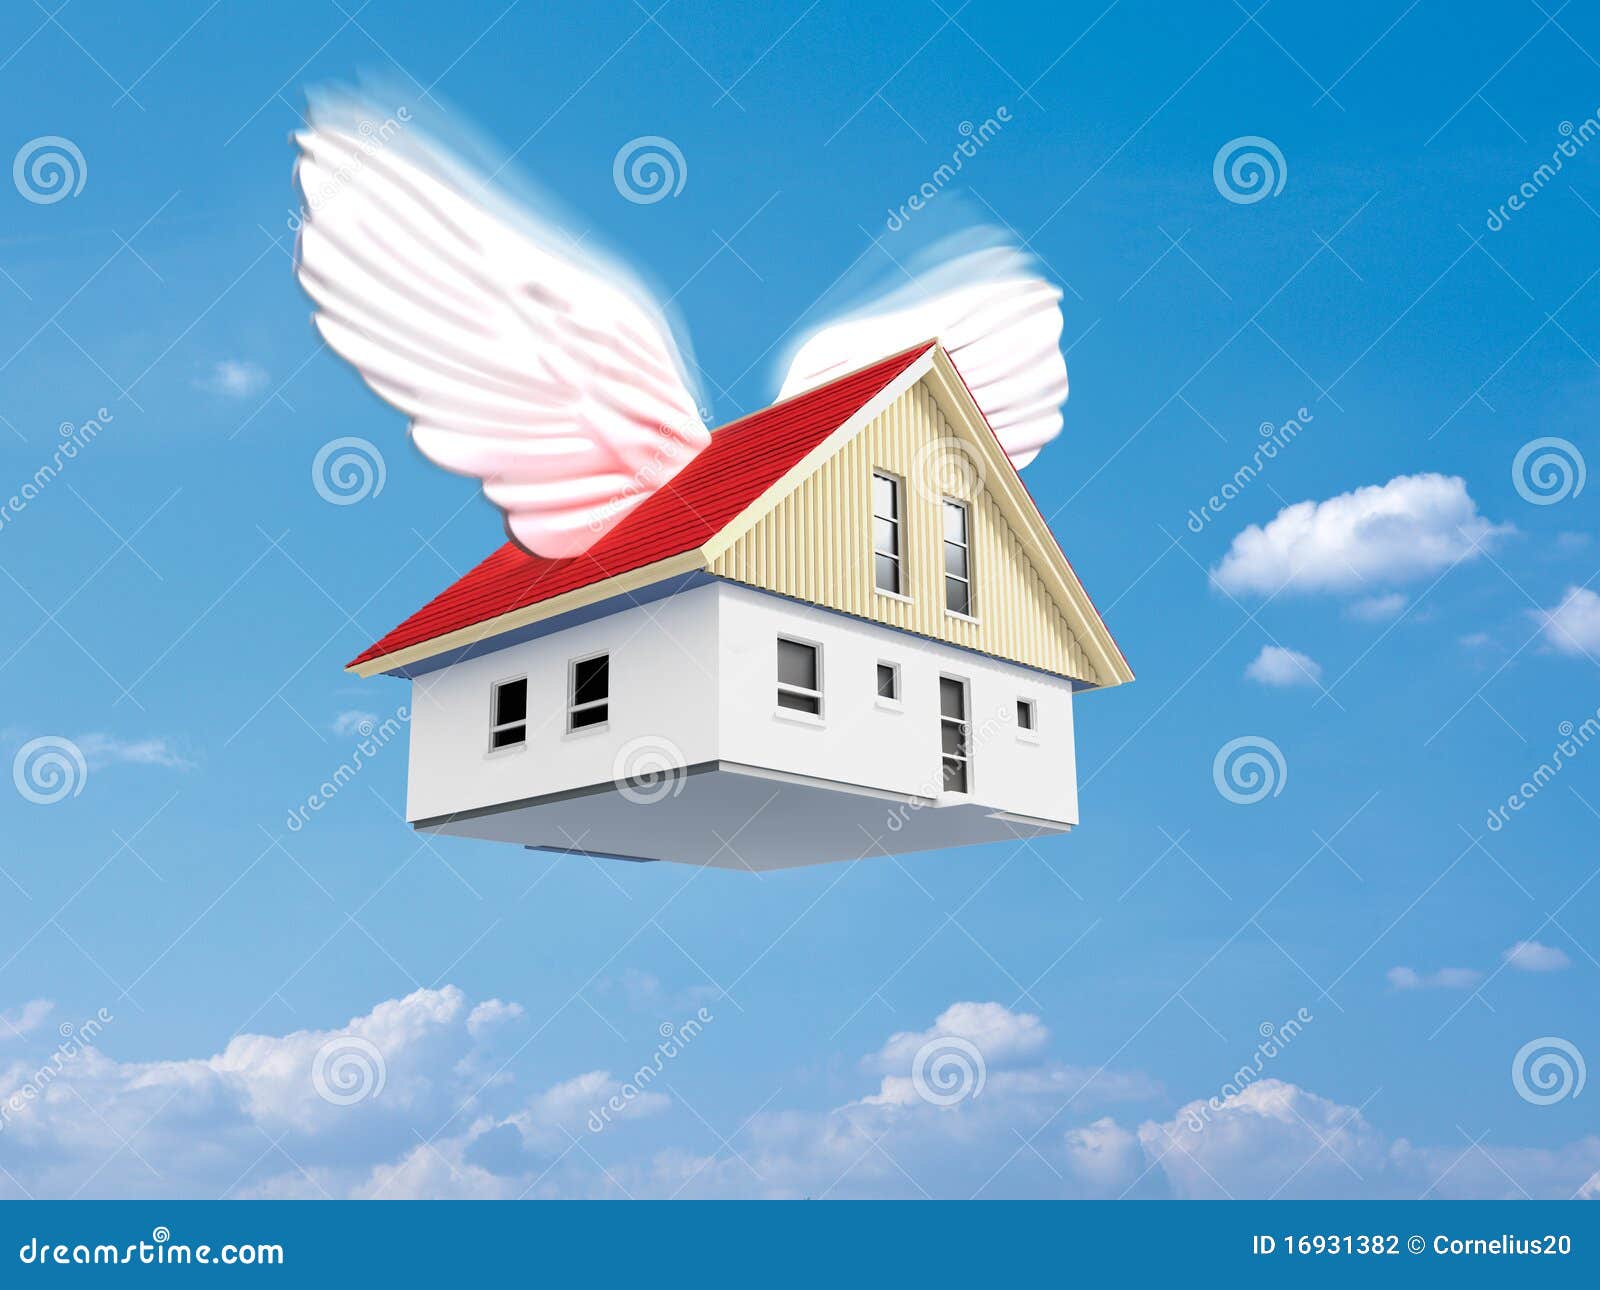 flying-house-16931382.jpg